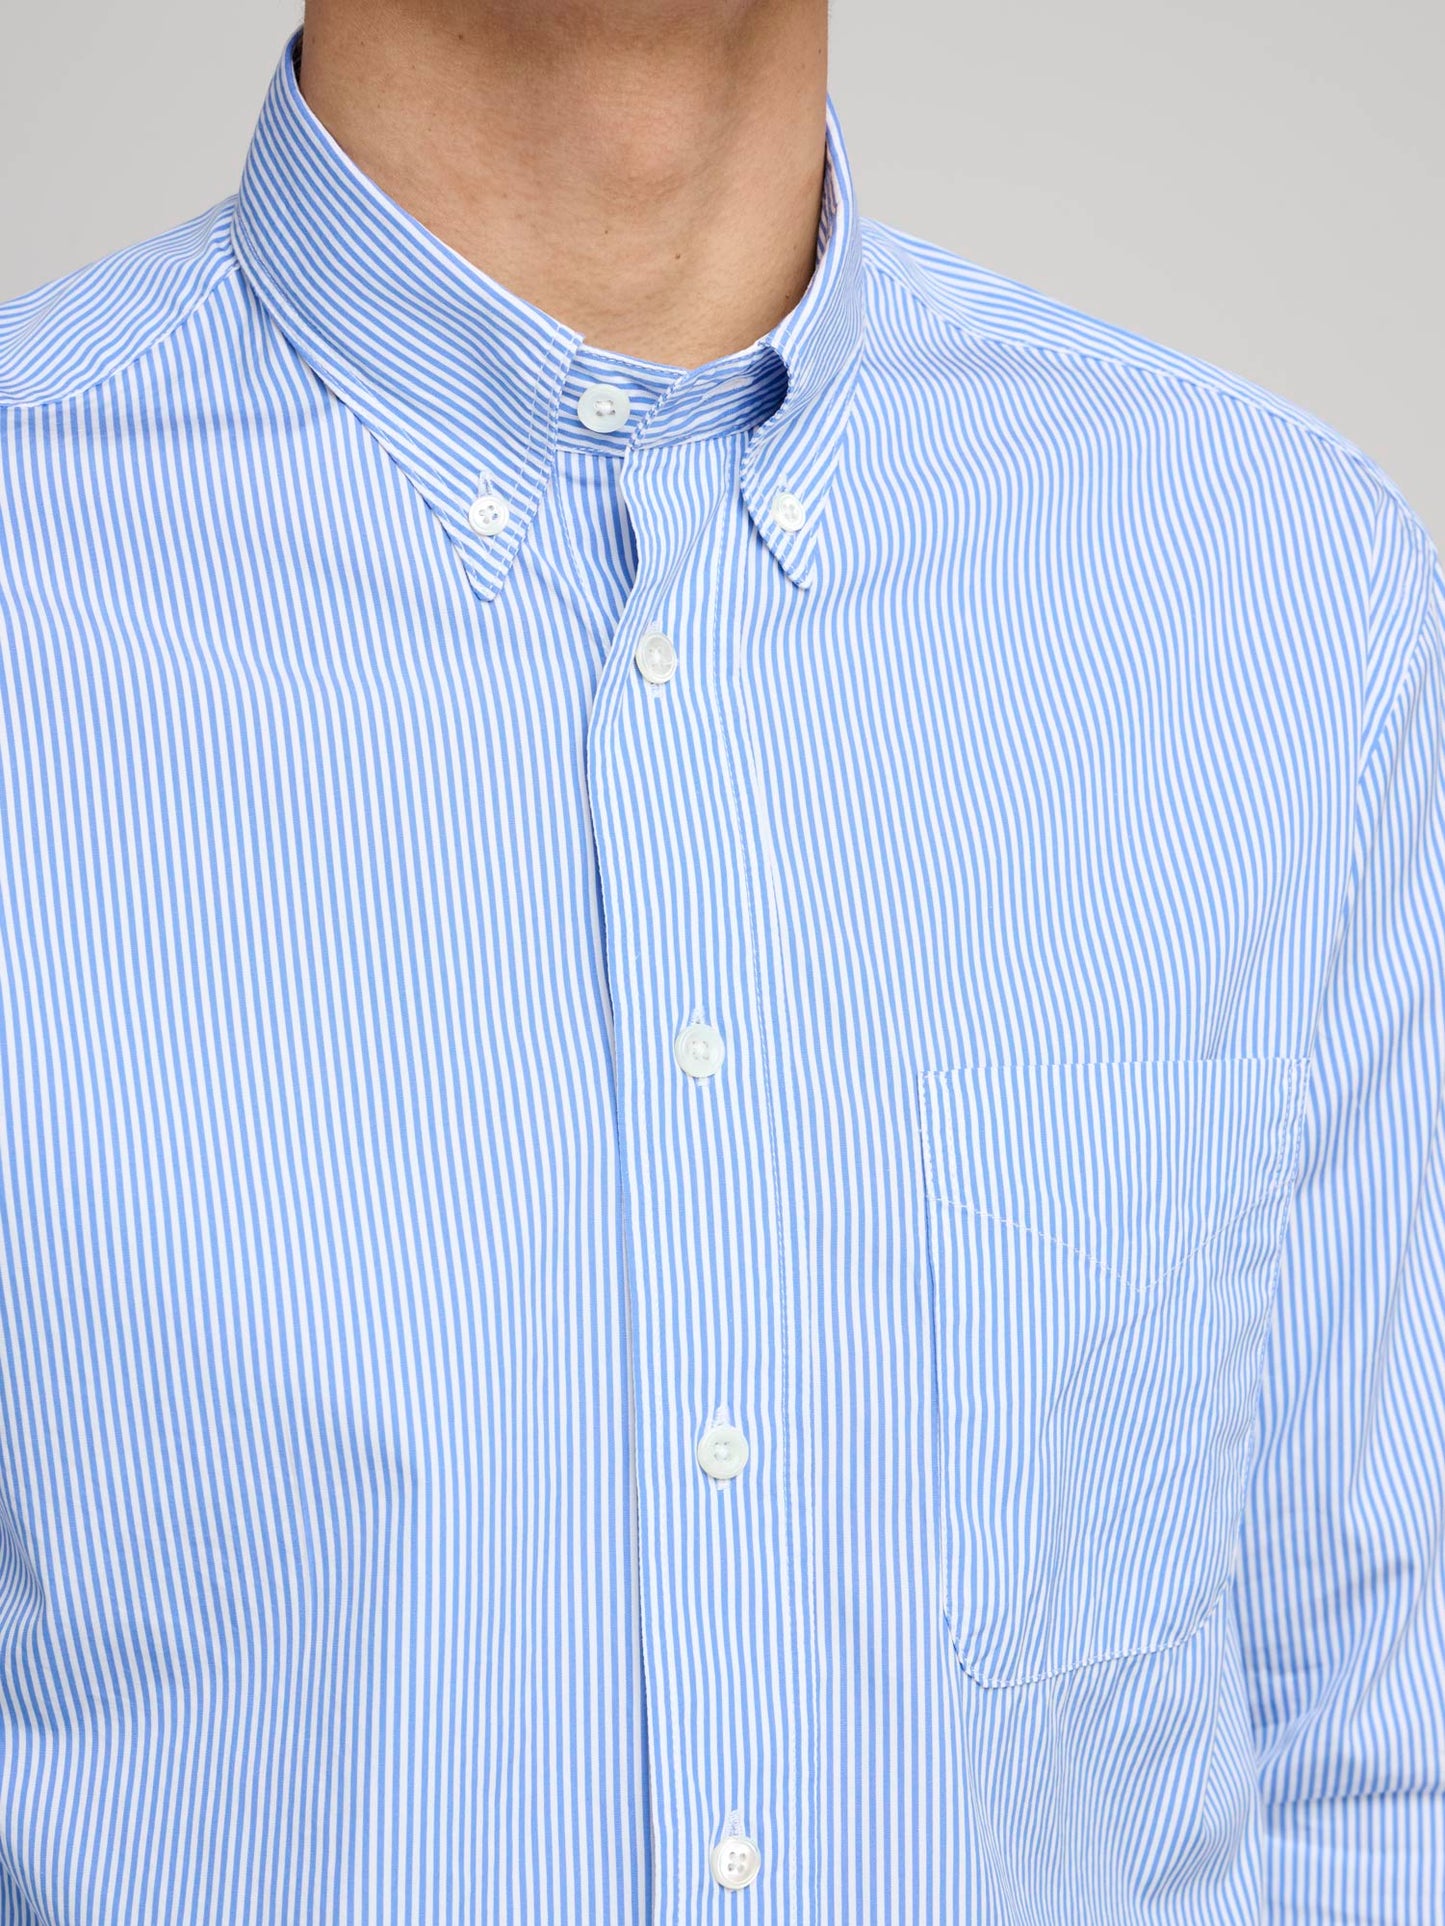 American BD Poplin Shirt, Penstripe White/Blue